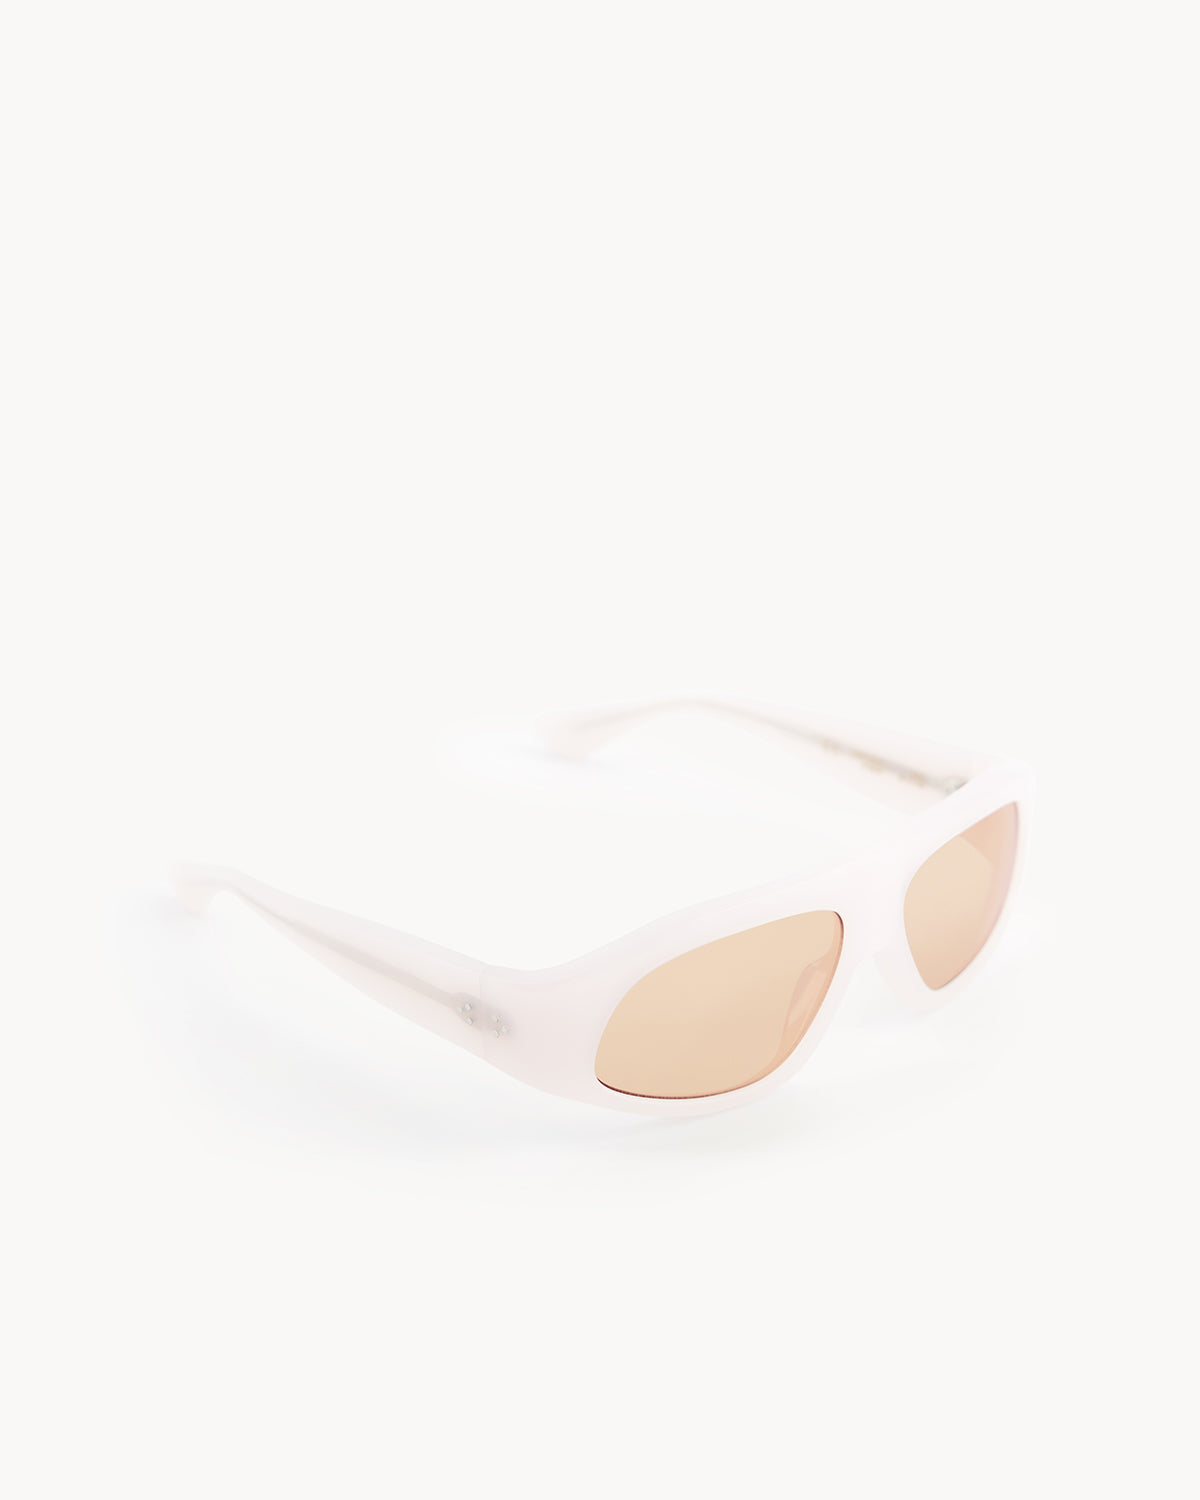 Port Tanger Irfan Sunglasses in Lulua Acetate and Amber Lenses 2